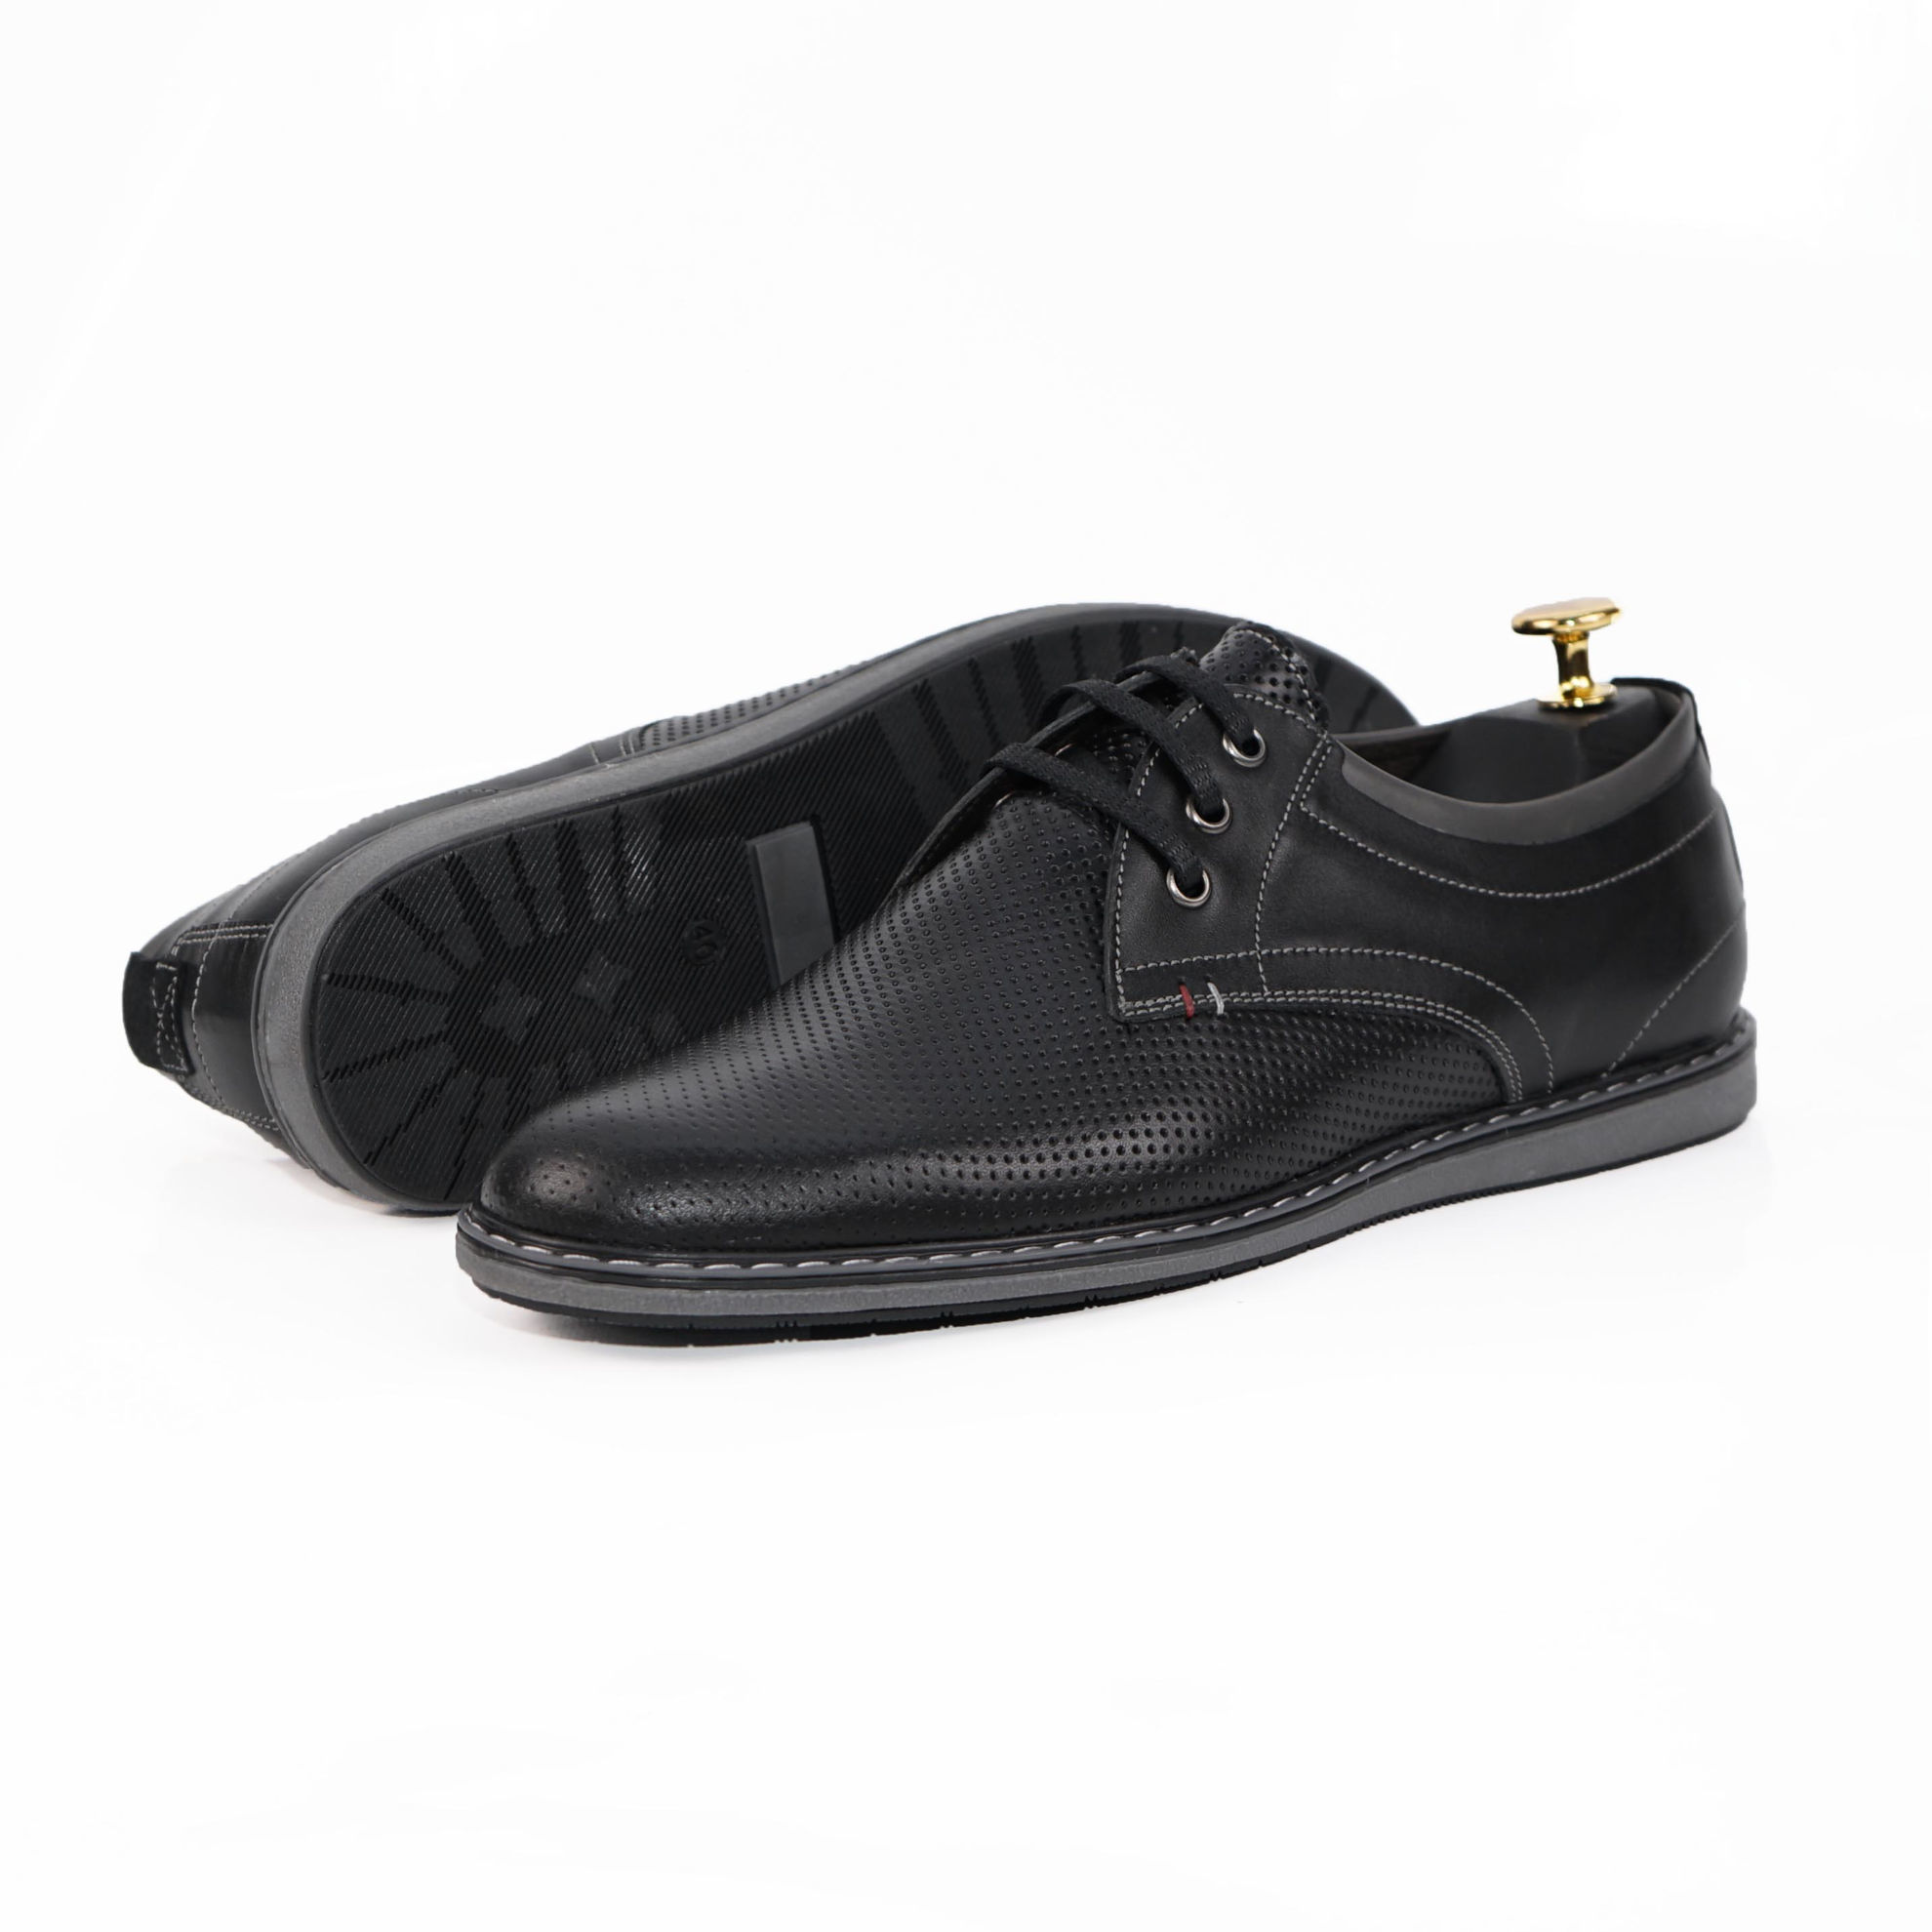 Imagine Pantofi casual bărbați piele naturală 422 negru